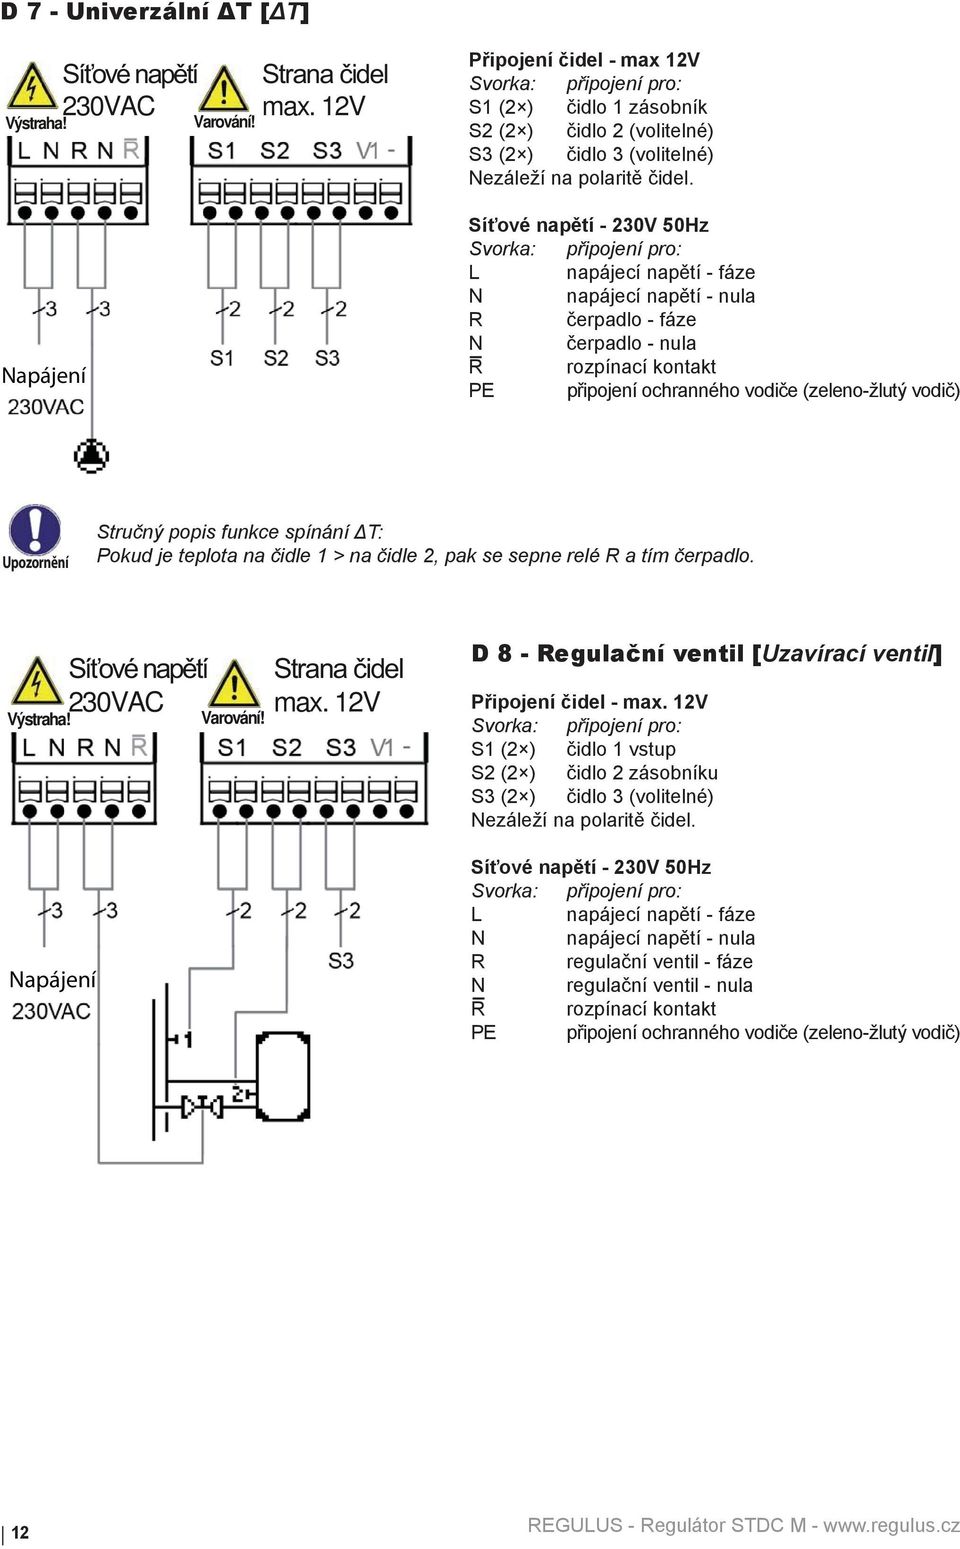 Síťové napětí - 230V 50Hz L napájecí napětí - fáze N napájecí napětí - nula R čerpadlo - fáze N čerpadlo - nula R rozpínací kontakt PE připojení ochranného vodiče (zeleno-žlutý vodič) Stručný popis